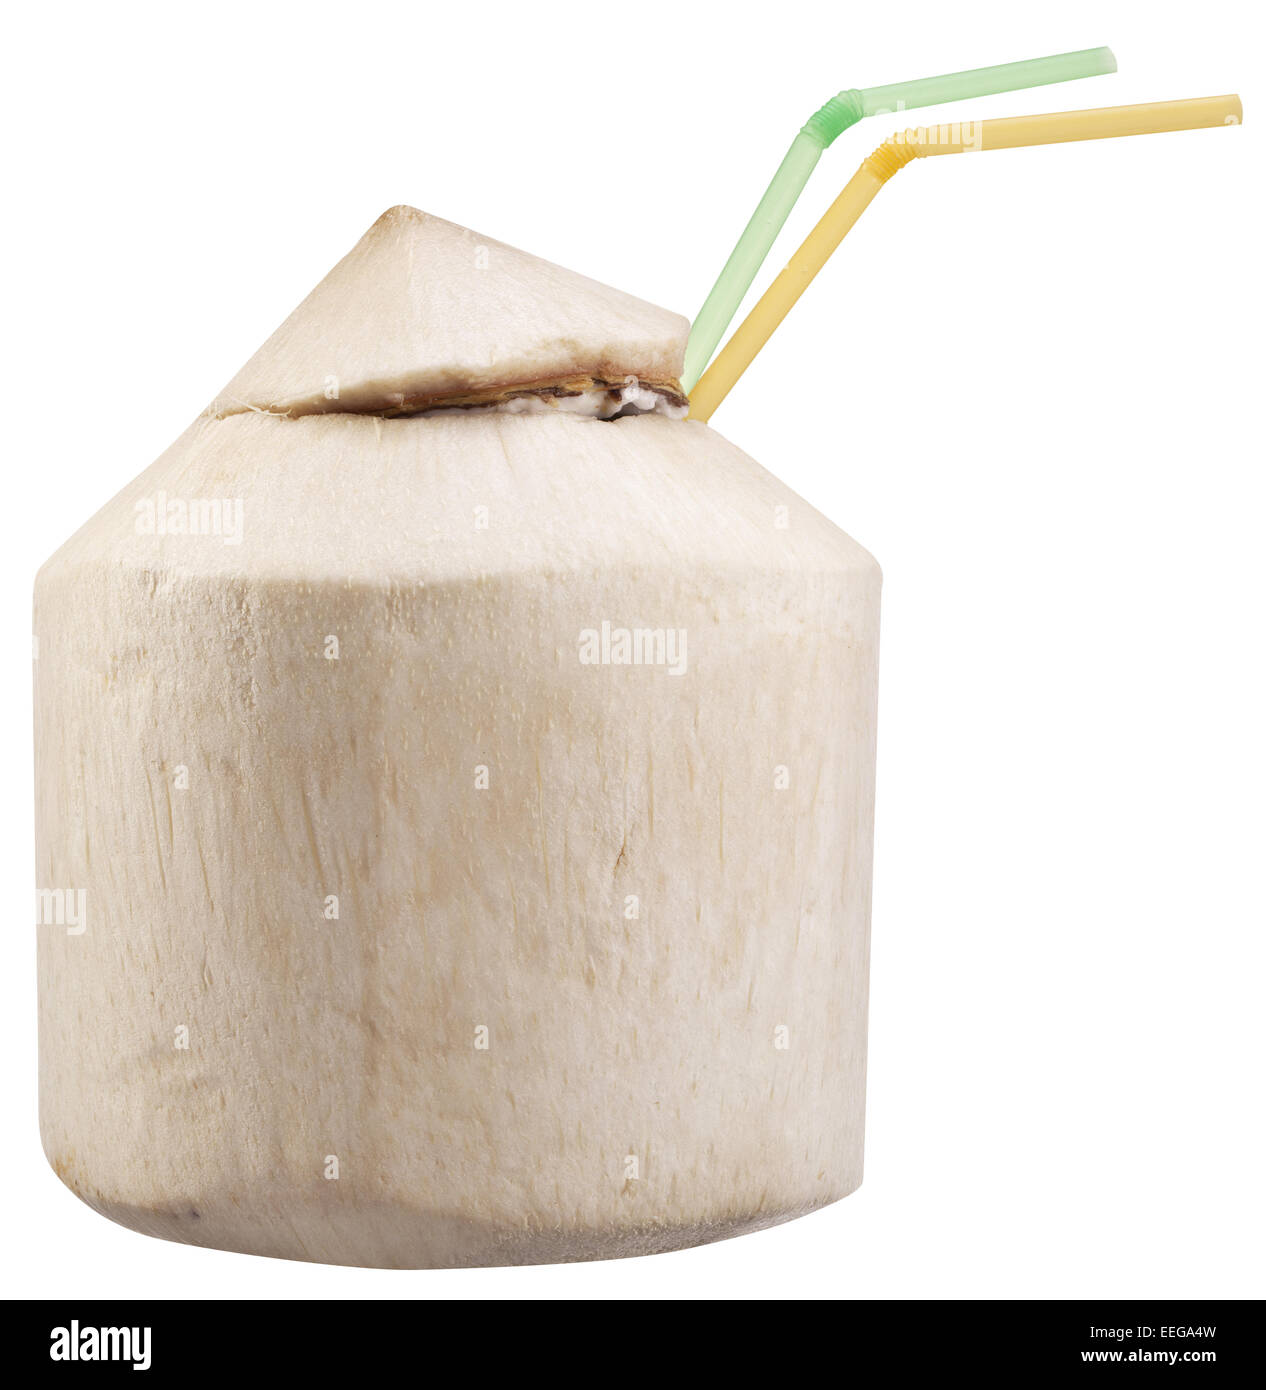 Kokosnuss-Wasser in der Nut. Datei enthält Beschneidungspfade. Stockfoto